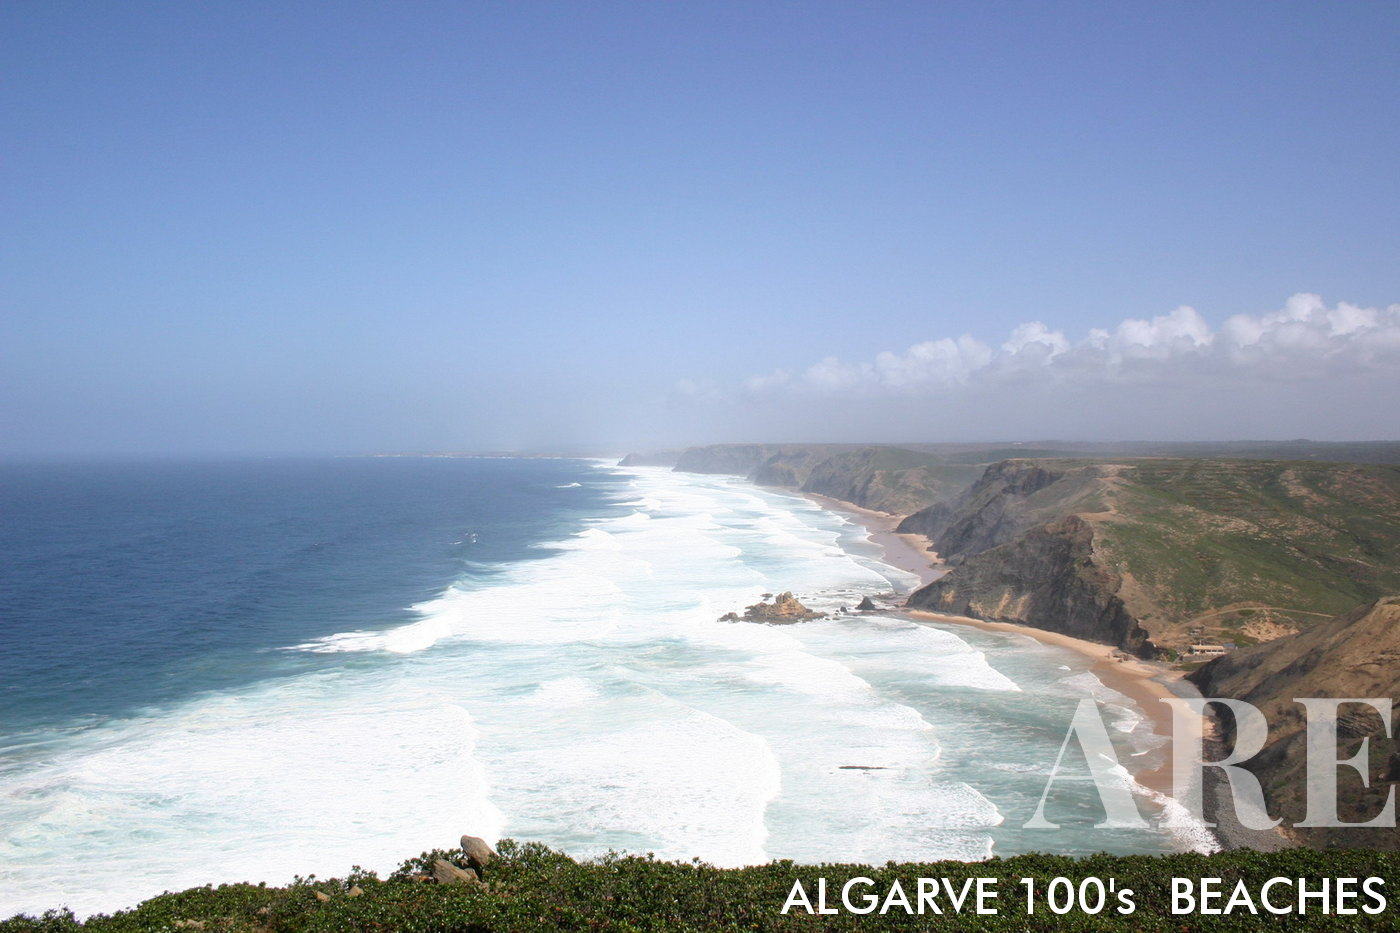 Desde una perspectiva elevada, las playas de Castelejo y Cordoama aparecen a la vista, las olas blancas dominan la escena en un poderoso oleaje de marzo, una muestra vívida de la grandeza de la naturaleza.